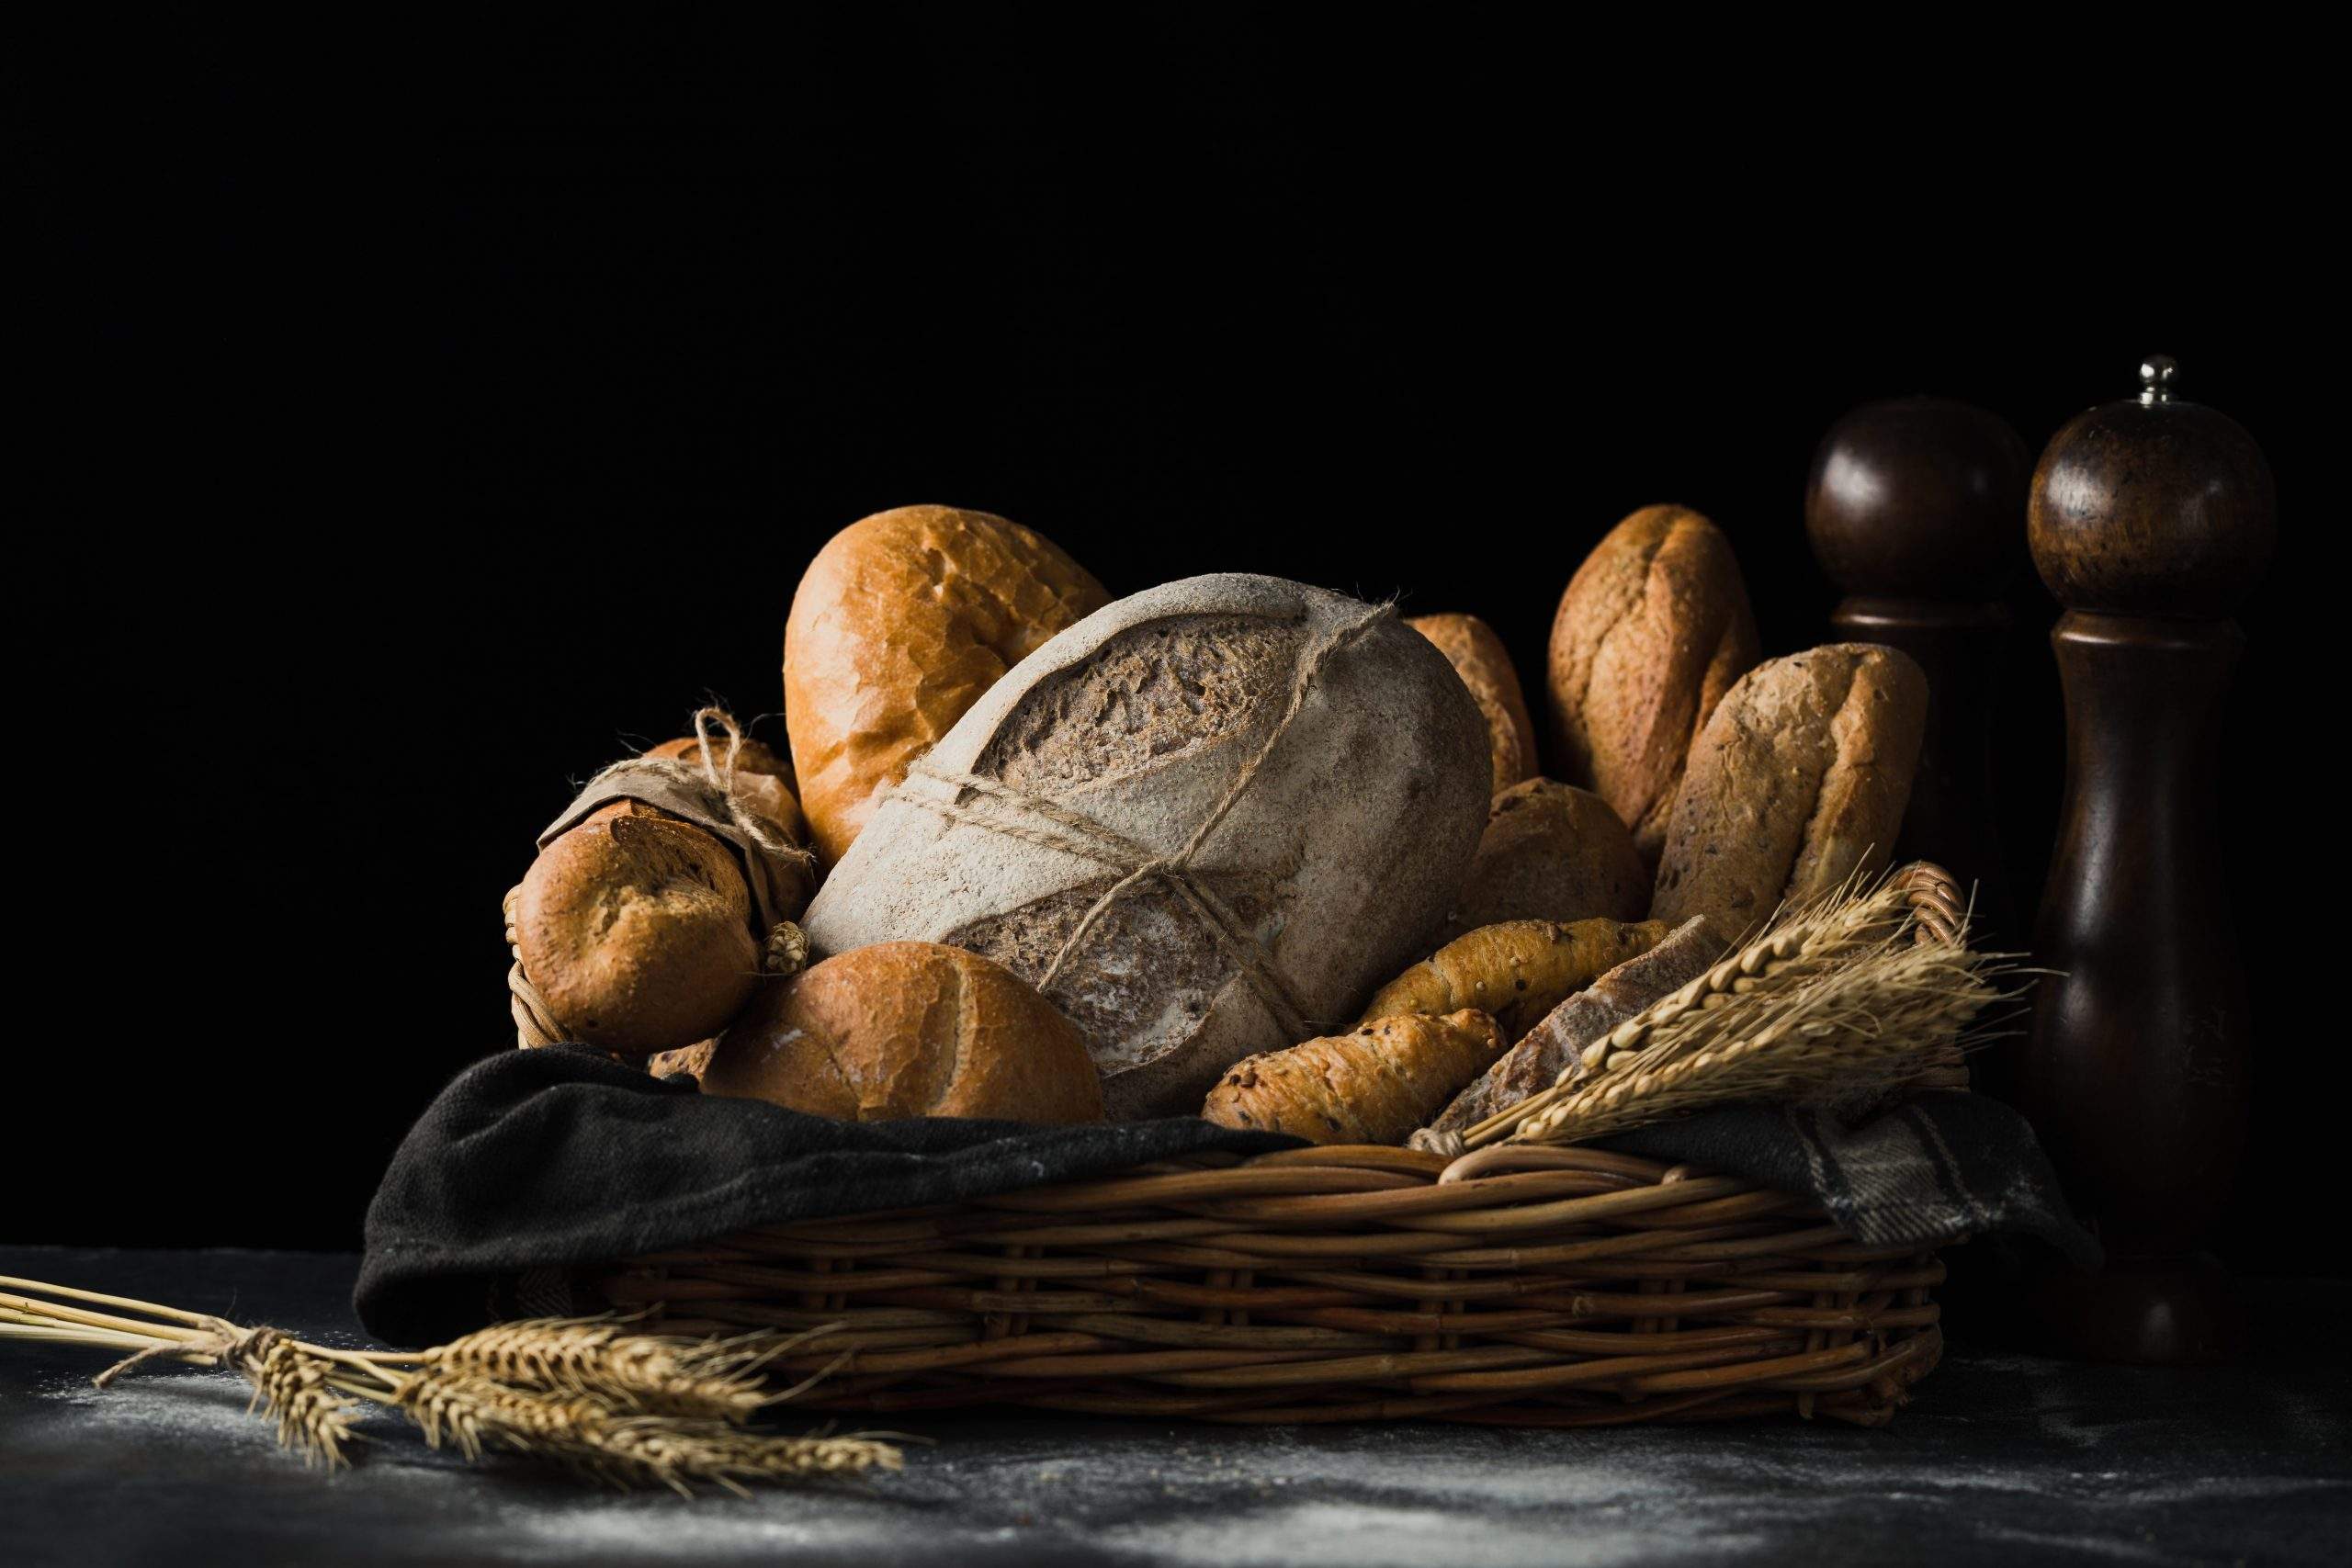 Le boulanger industriel Menissez investit 100 millions d’euros